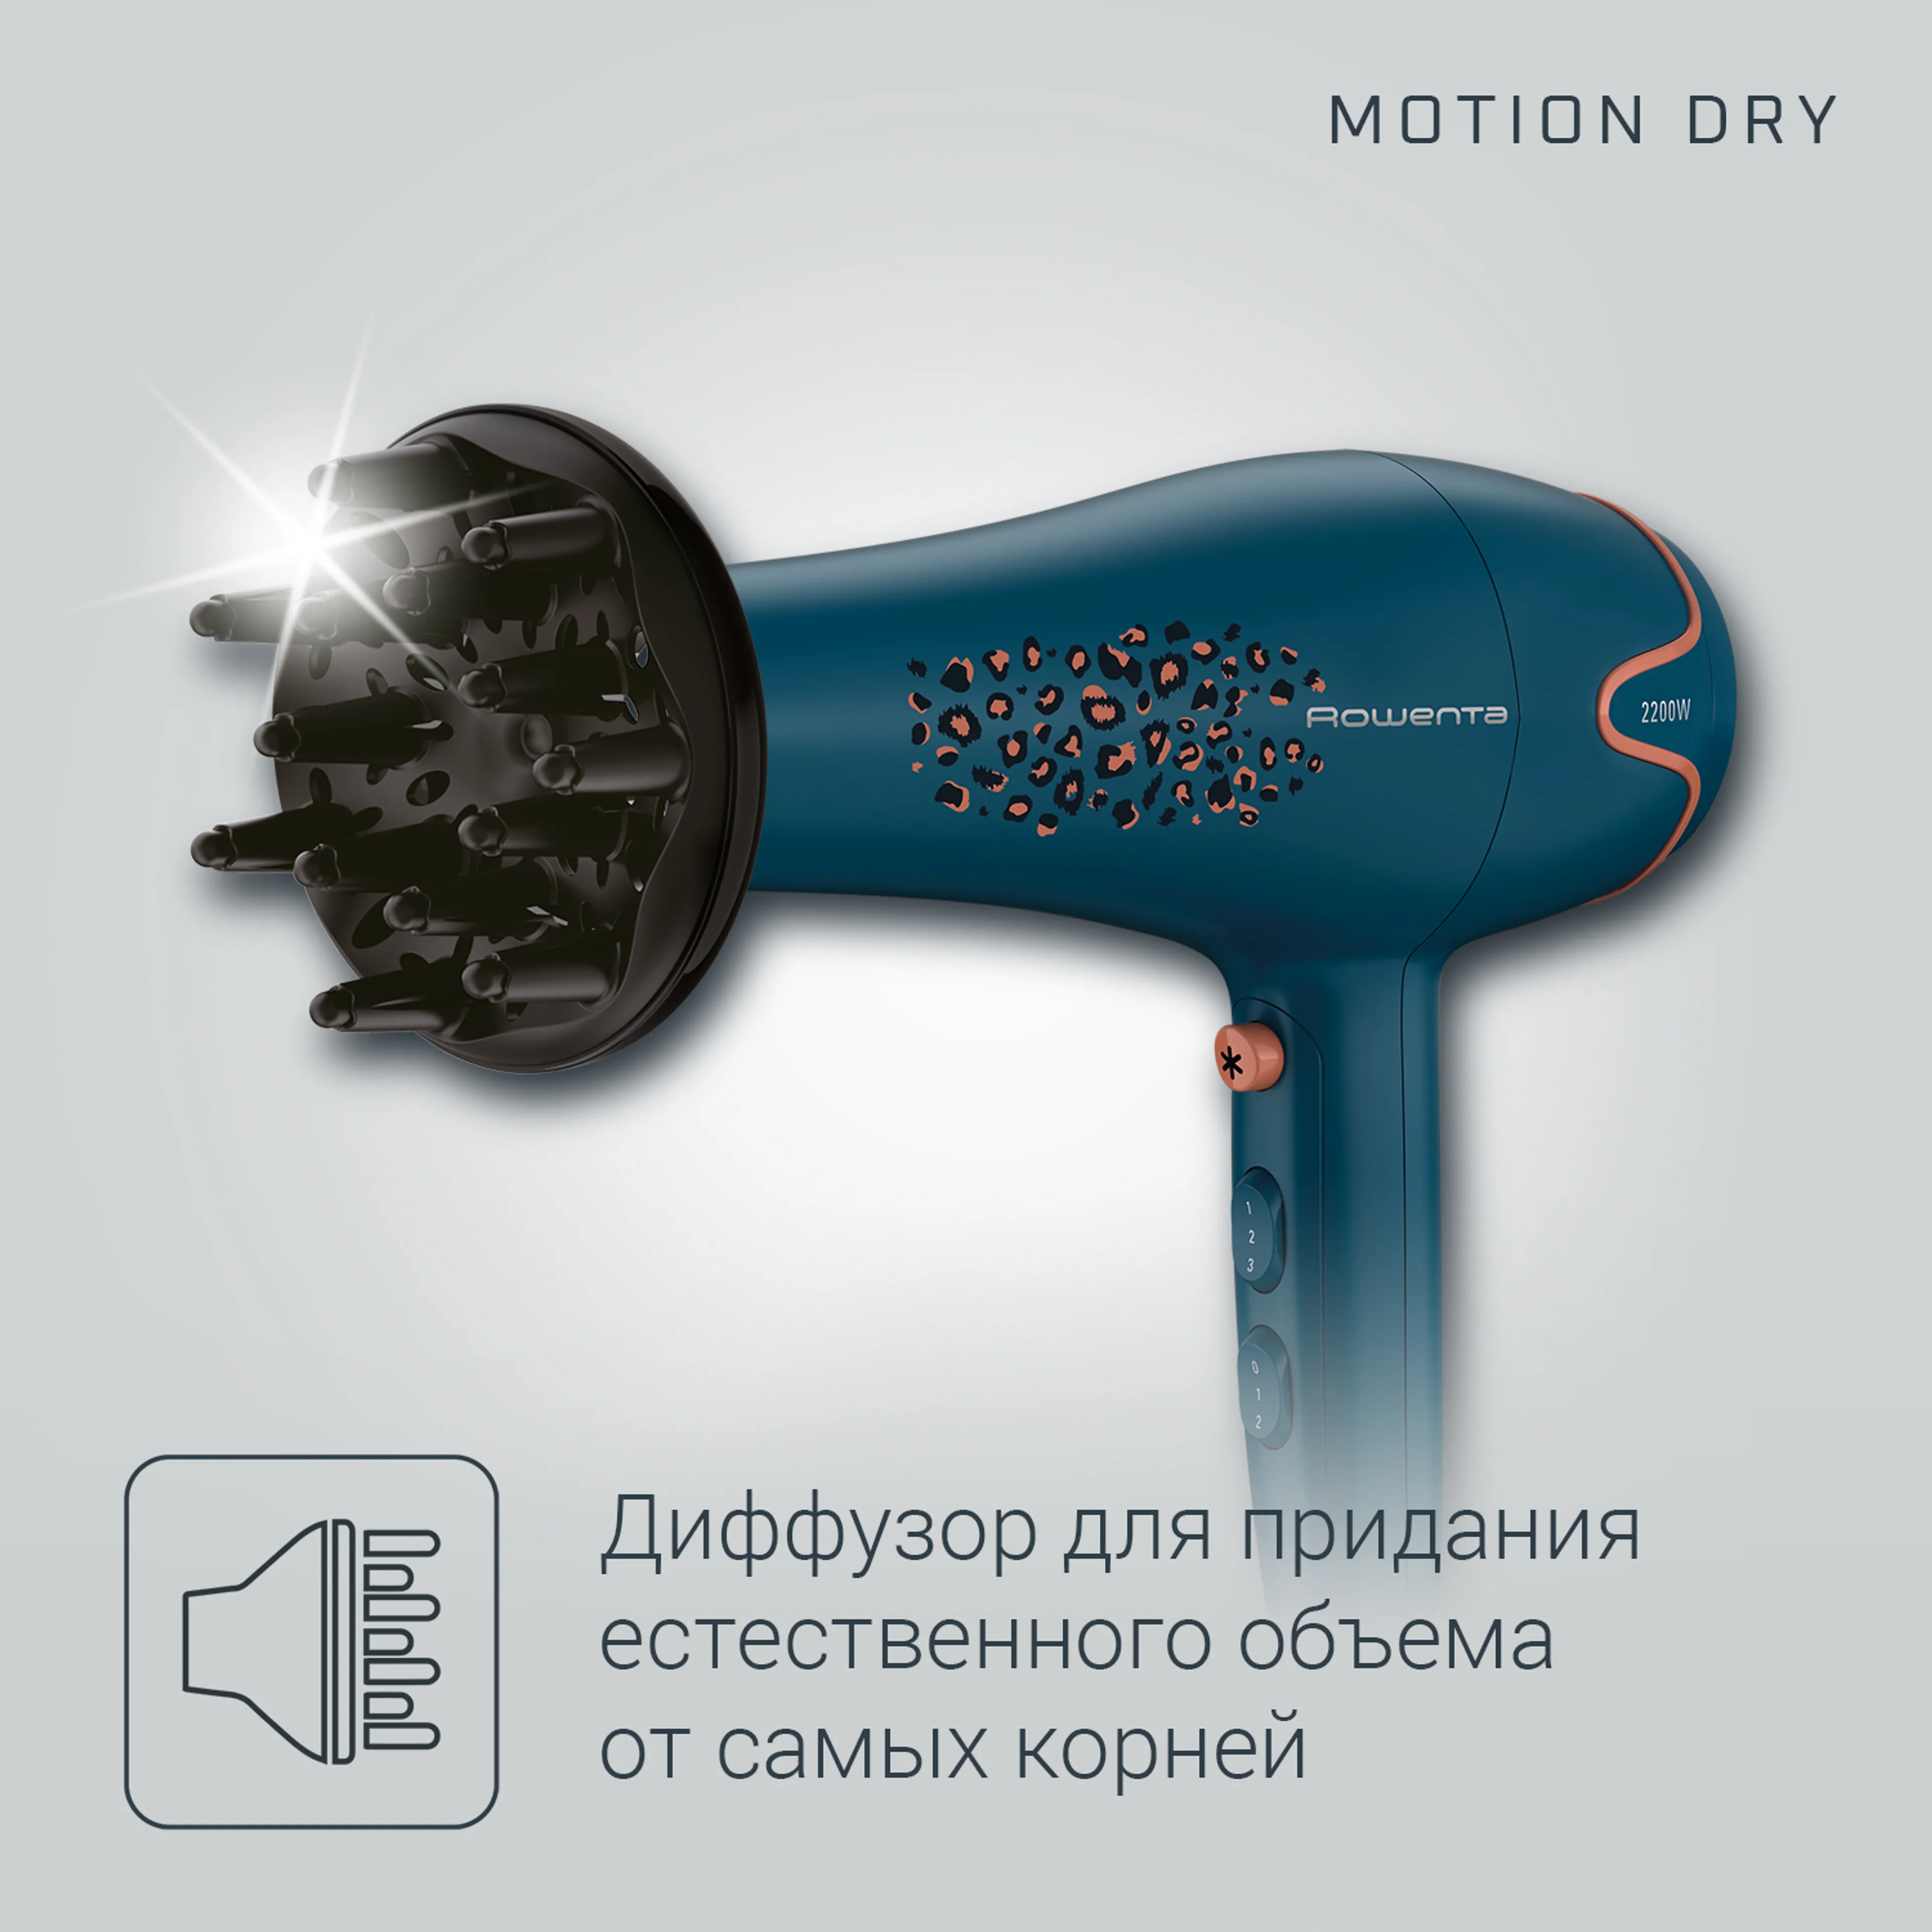 Фен Rowenta Motion Dry CV5706F0